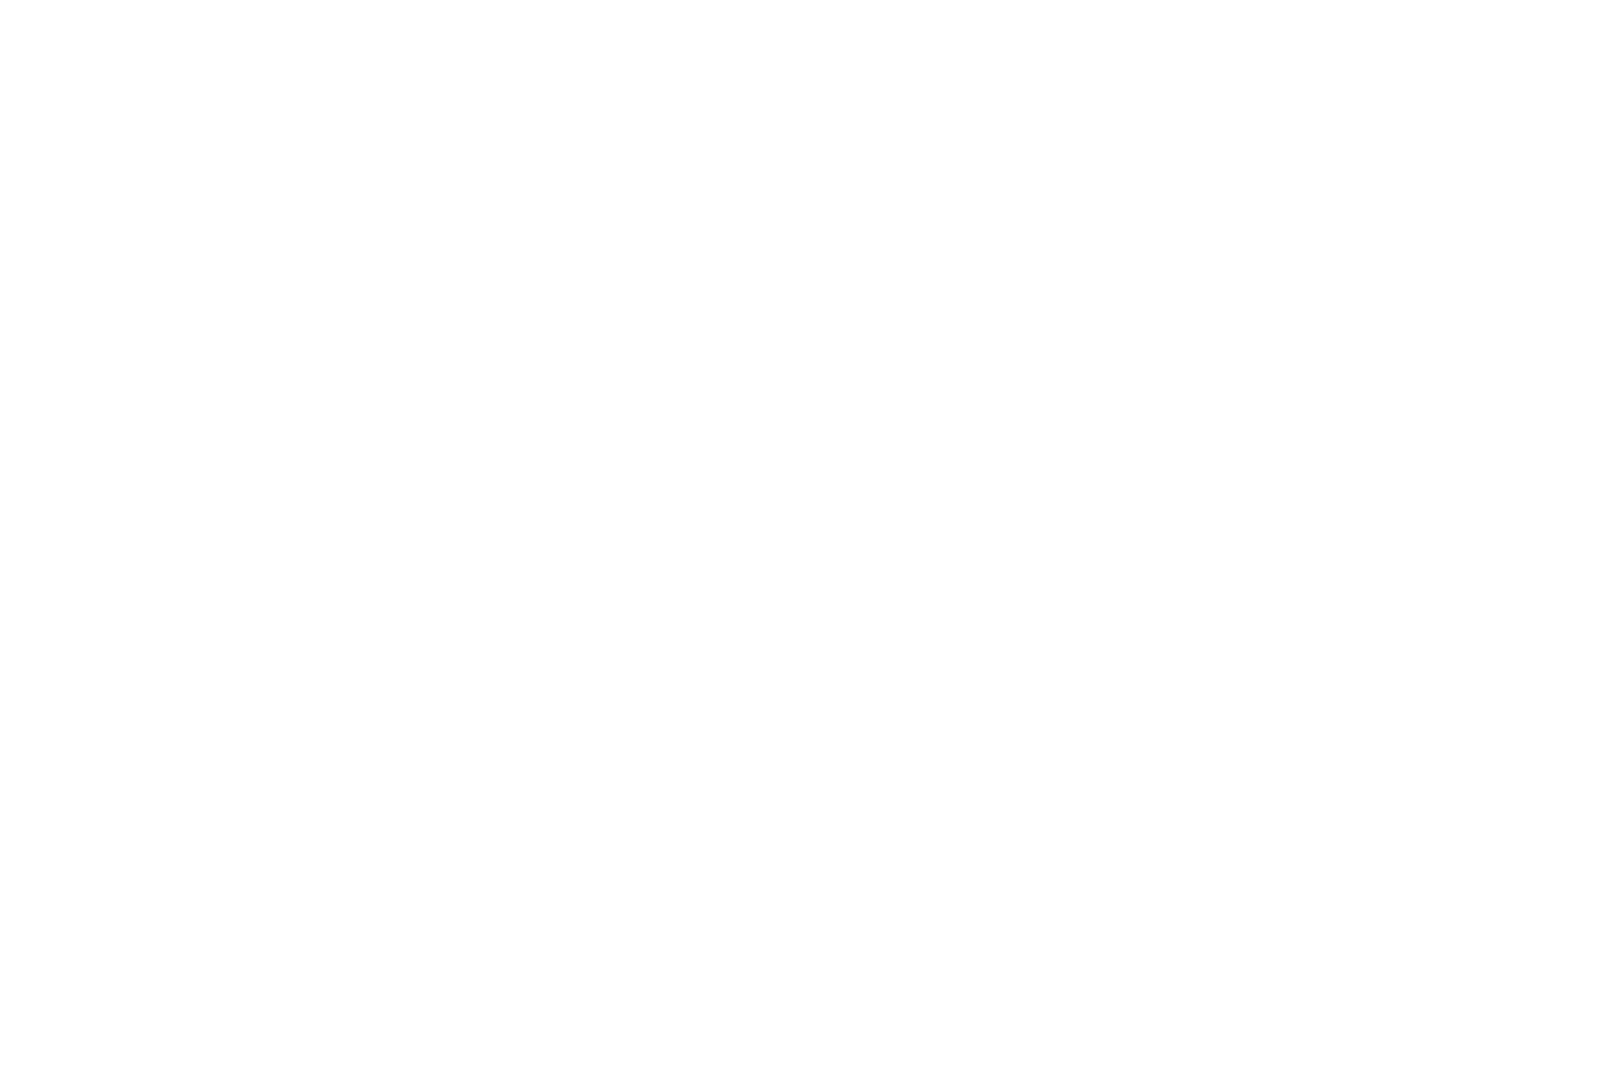 Brierley